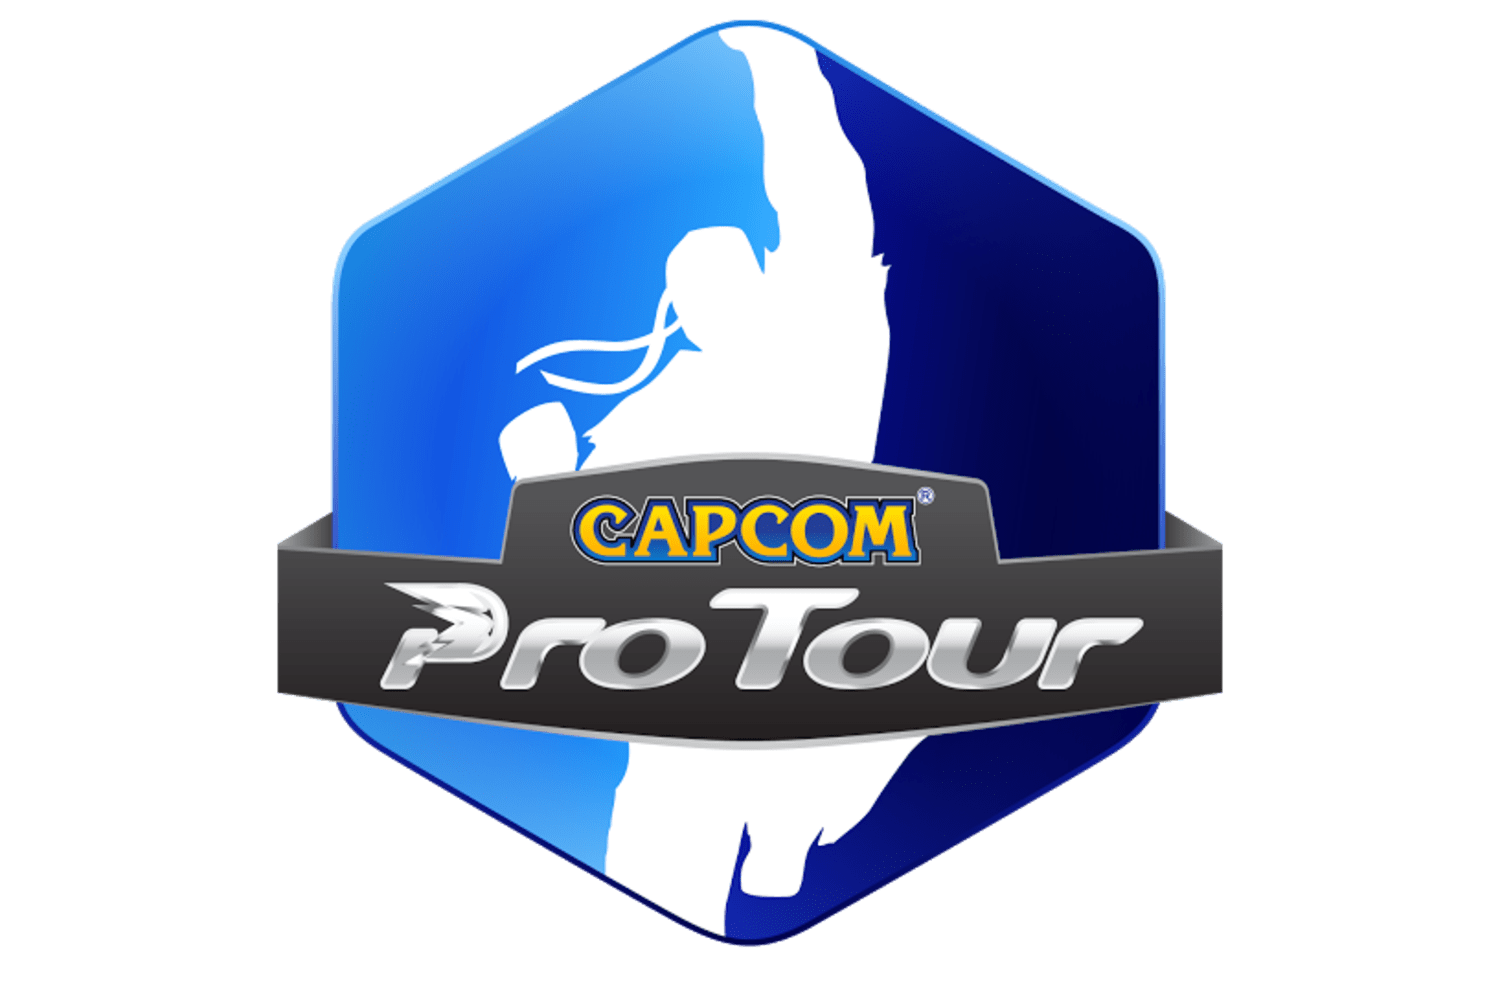 Capcom Pro Tour 2016 Details Revealed